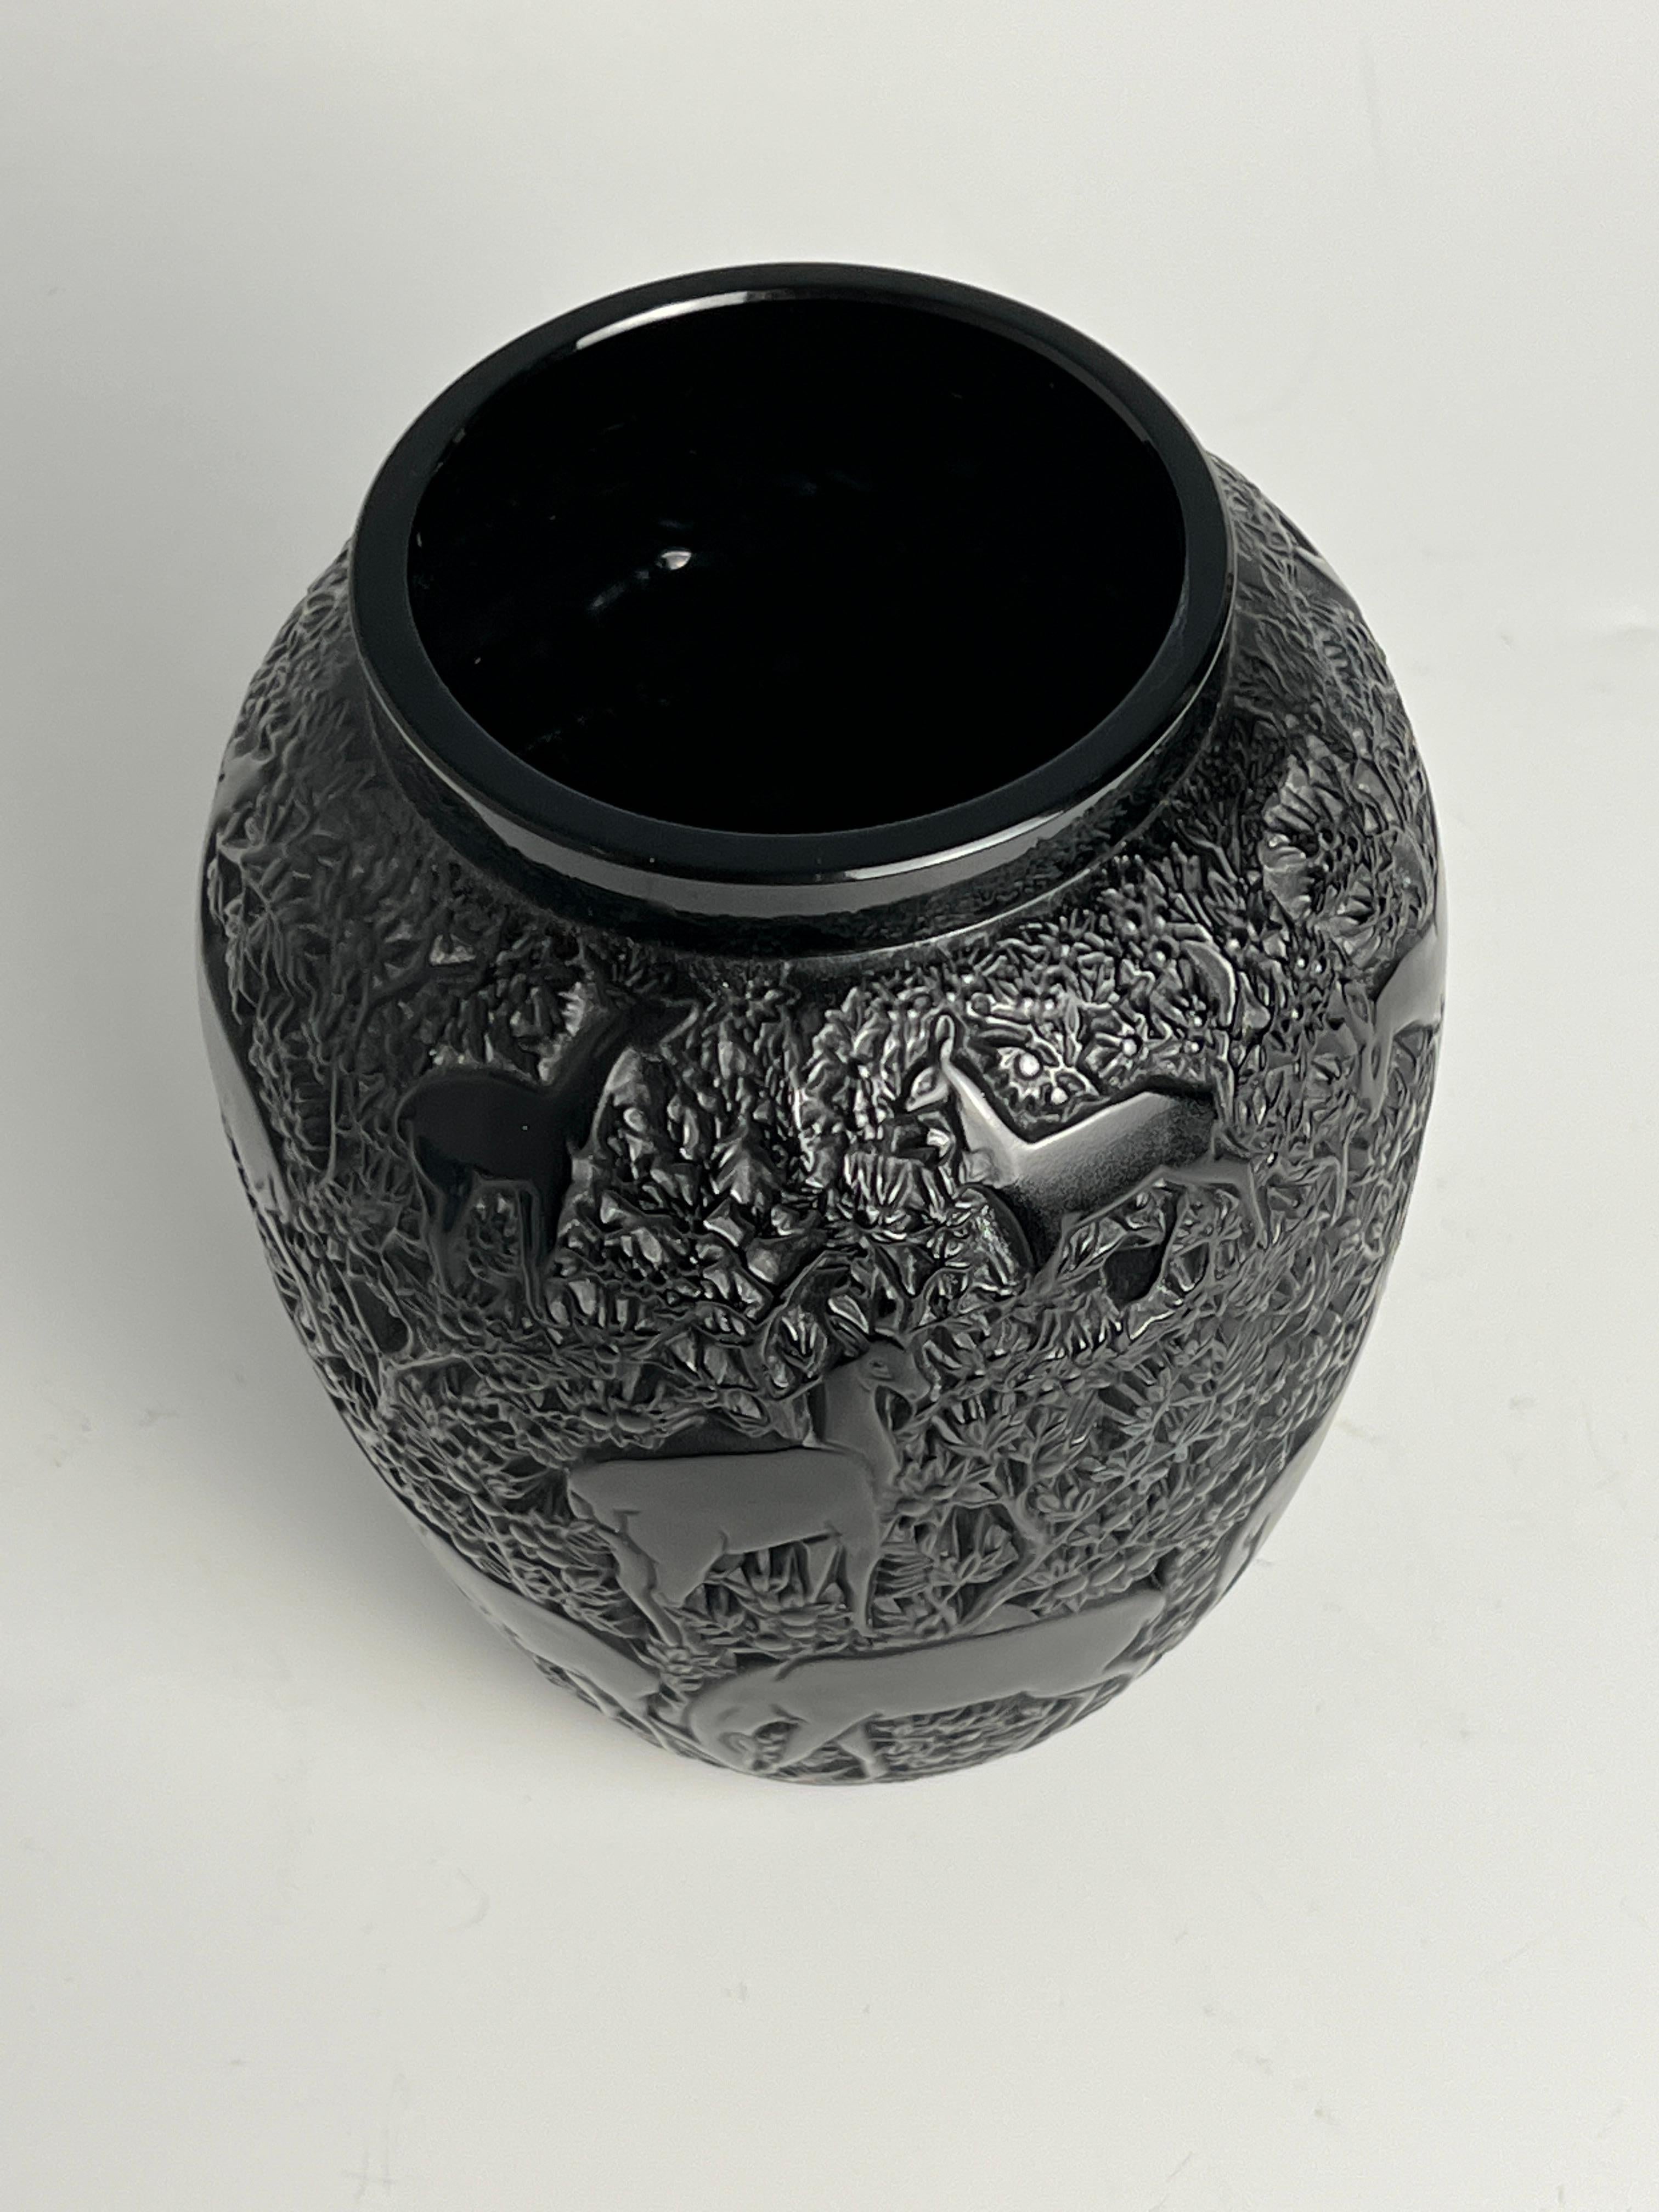 Black glass vase in the 